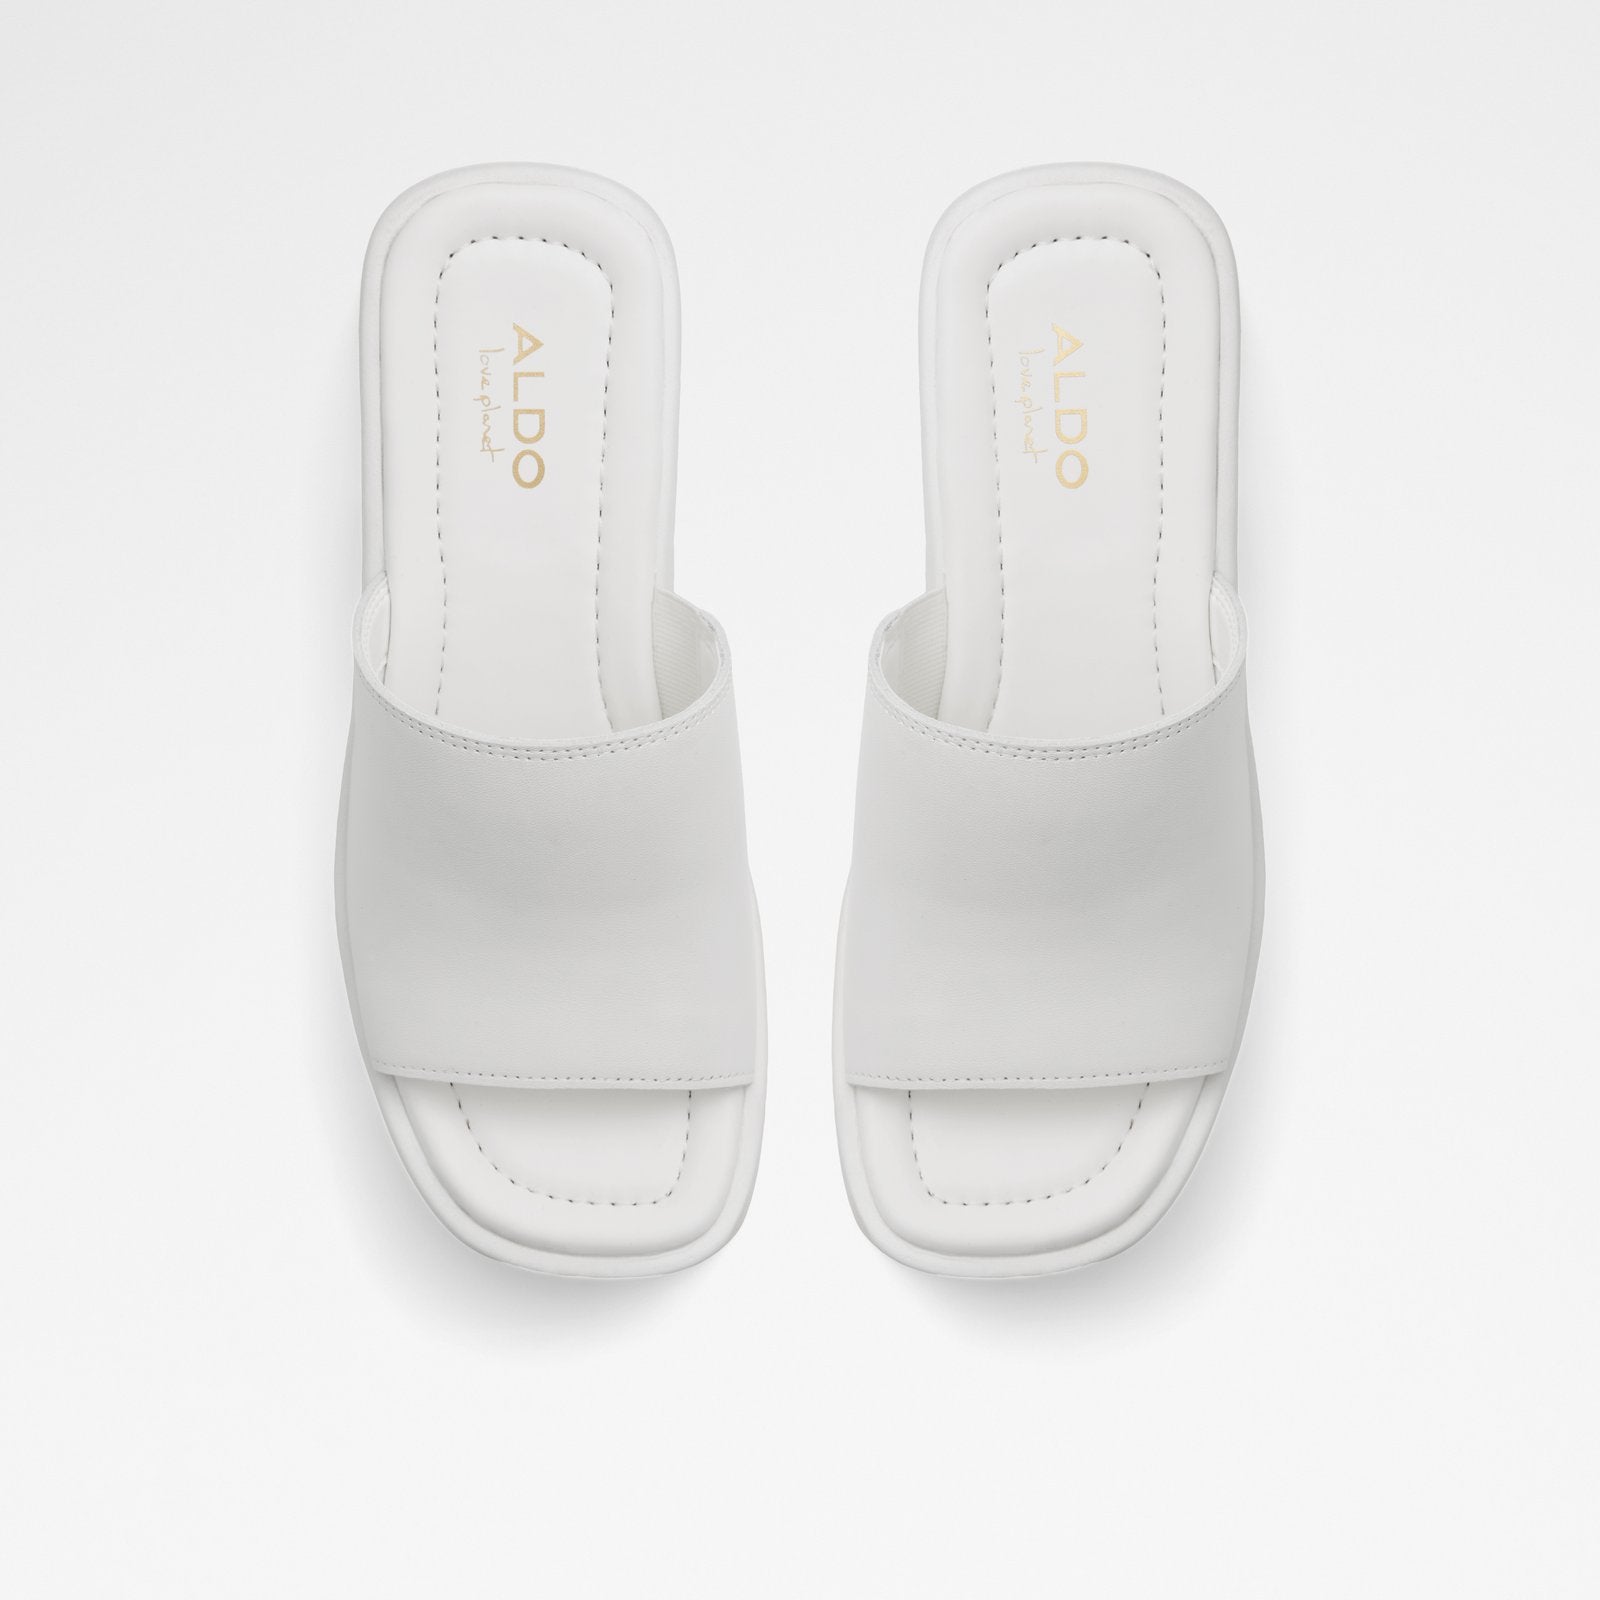 Betta Women Shoes - White - ALDO KSA